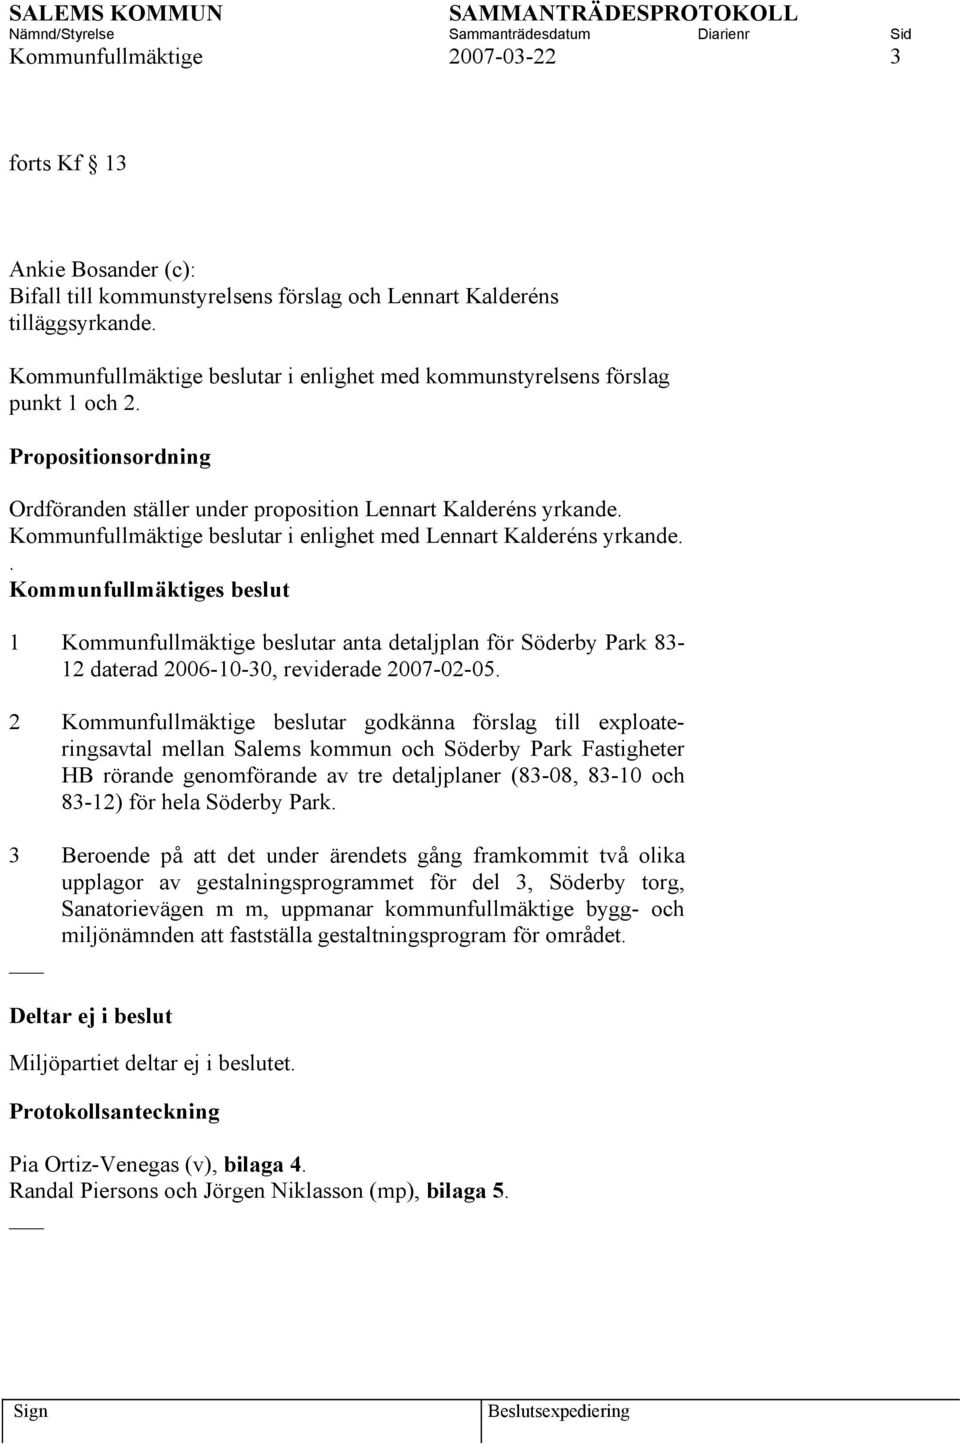 Kommunfullmäktige beslutar i enlighet med Lennart Kalderéns yrkande.. 1 Kommunfullmäktige beslutar anta detaljplan för Söderby Park 83-12 daterad 2006-10-30, reviderade 2007-02-05.